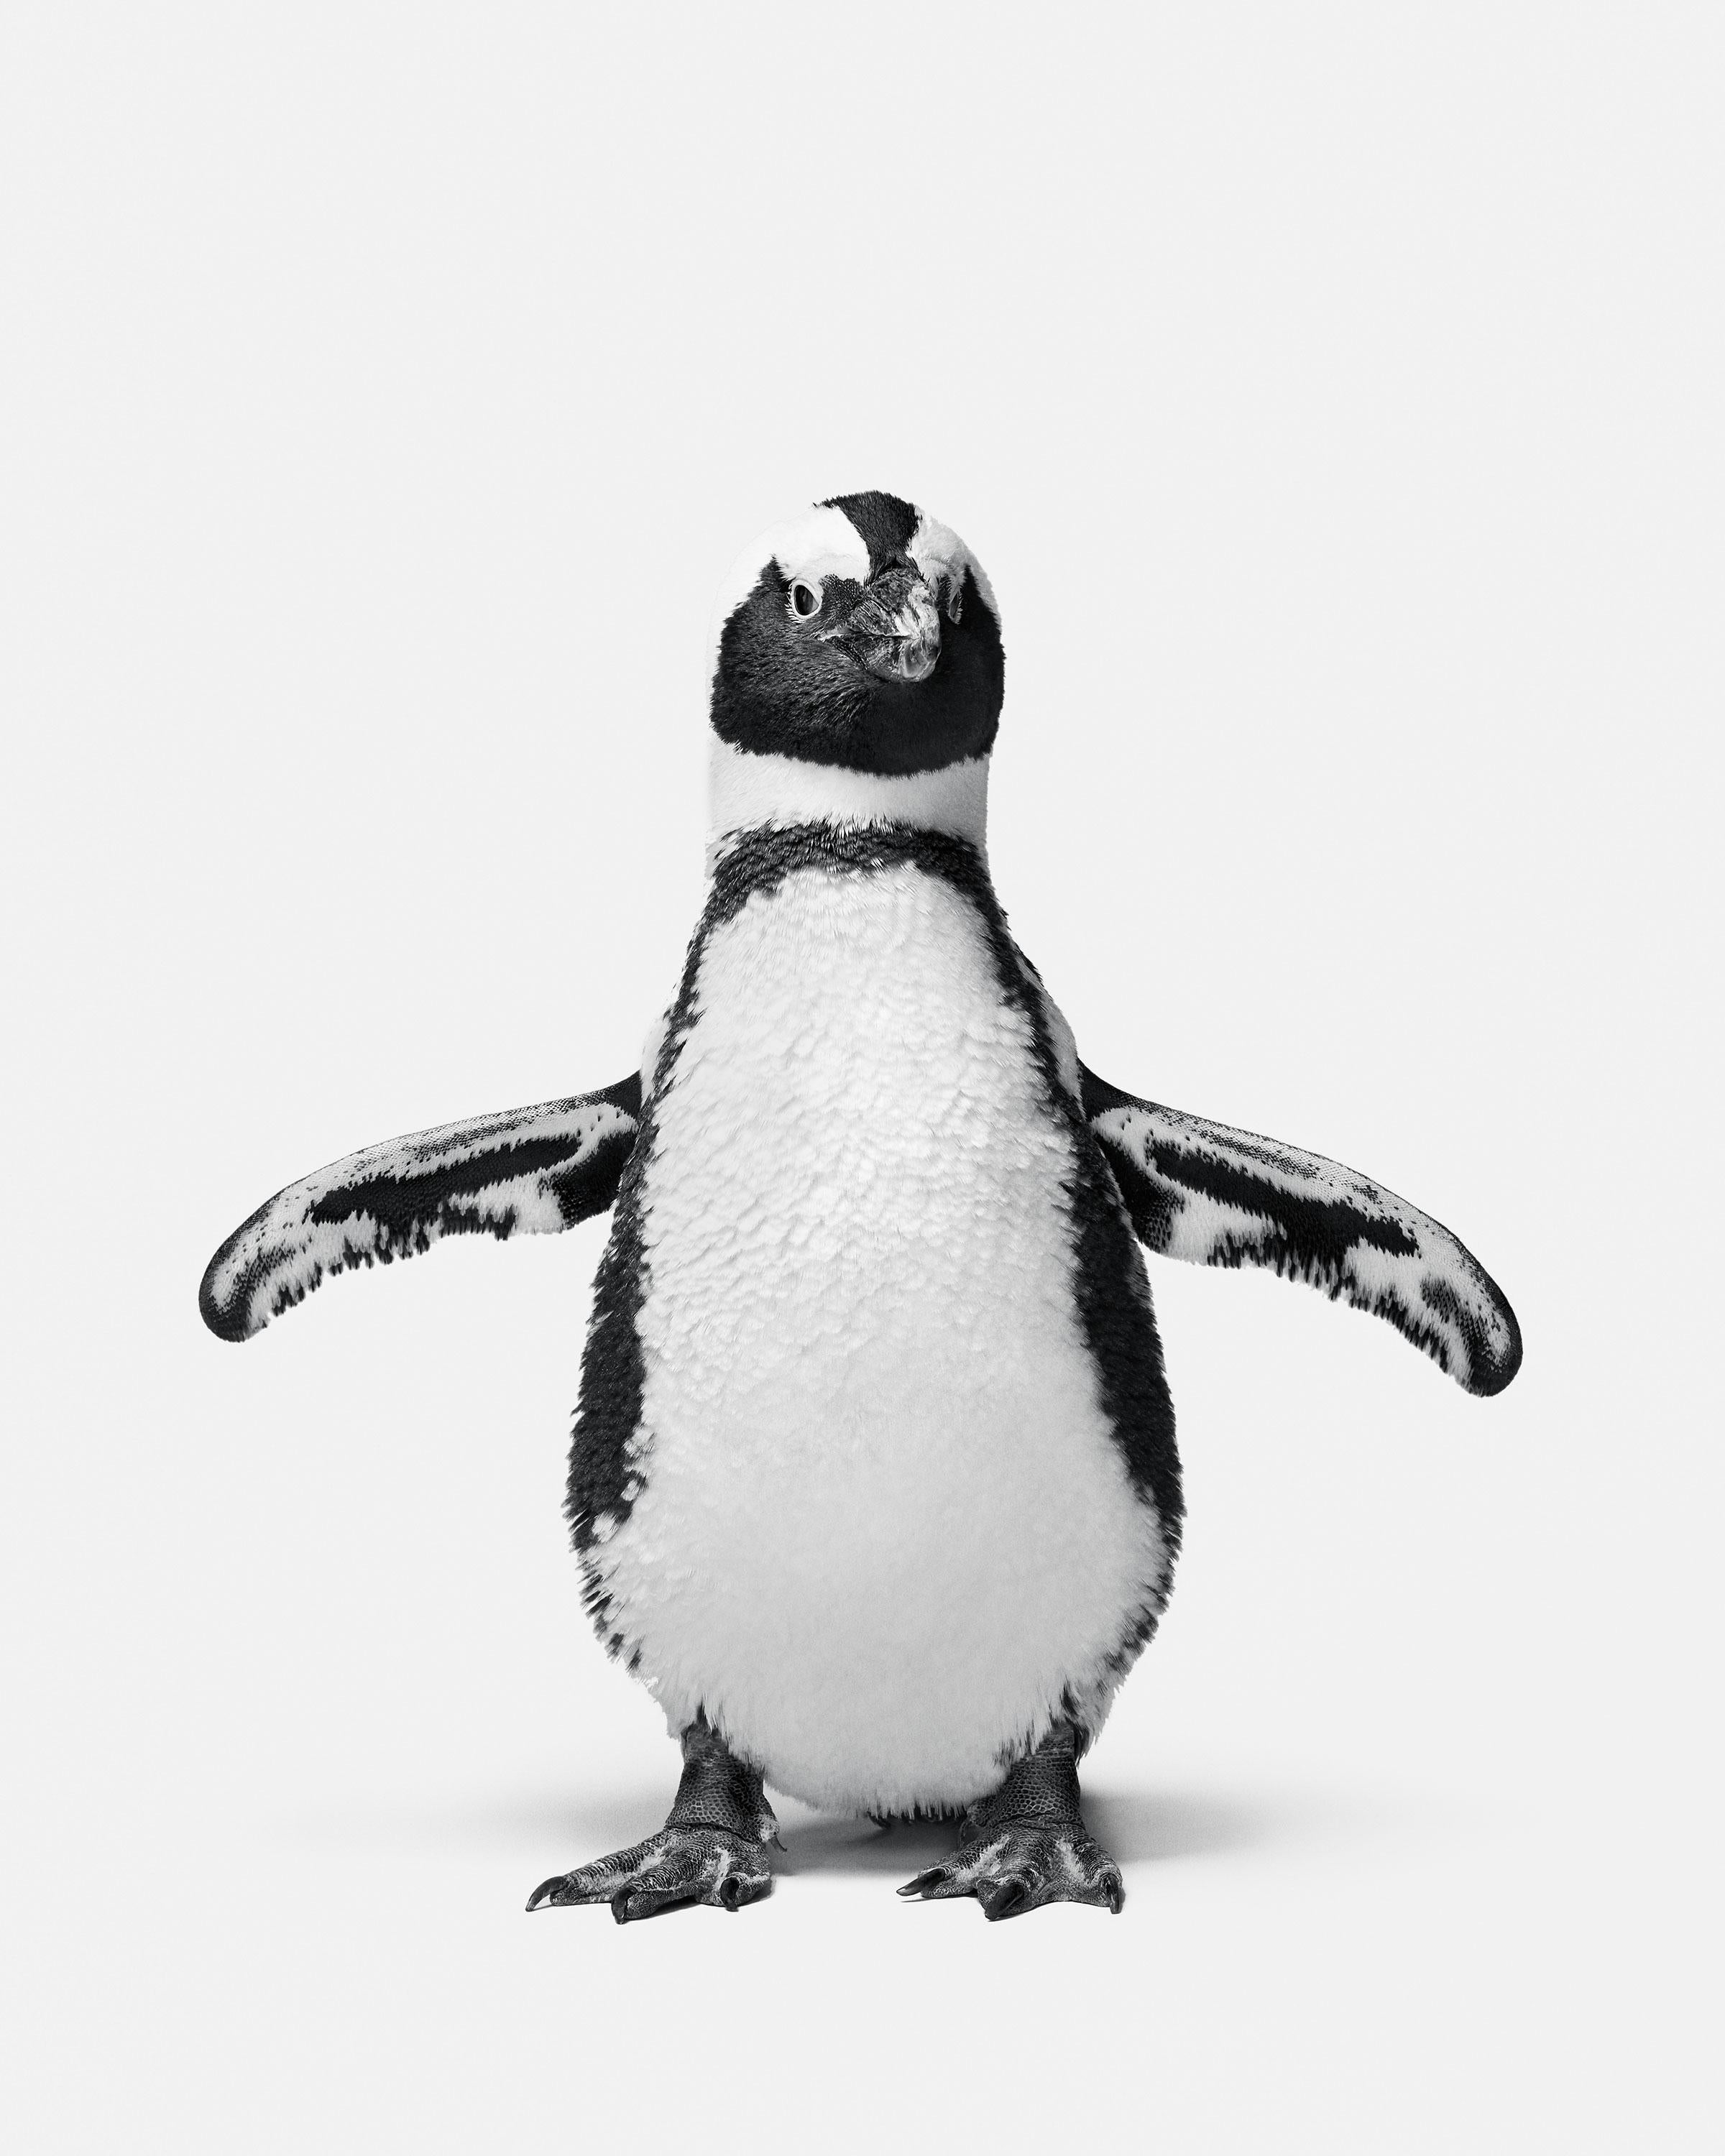 Randal Ford – Penguin No. 1, Fotografie 2018